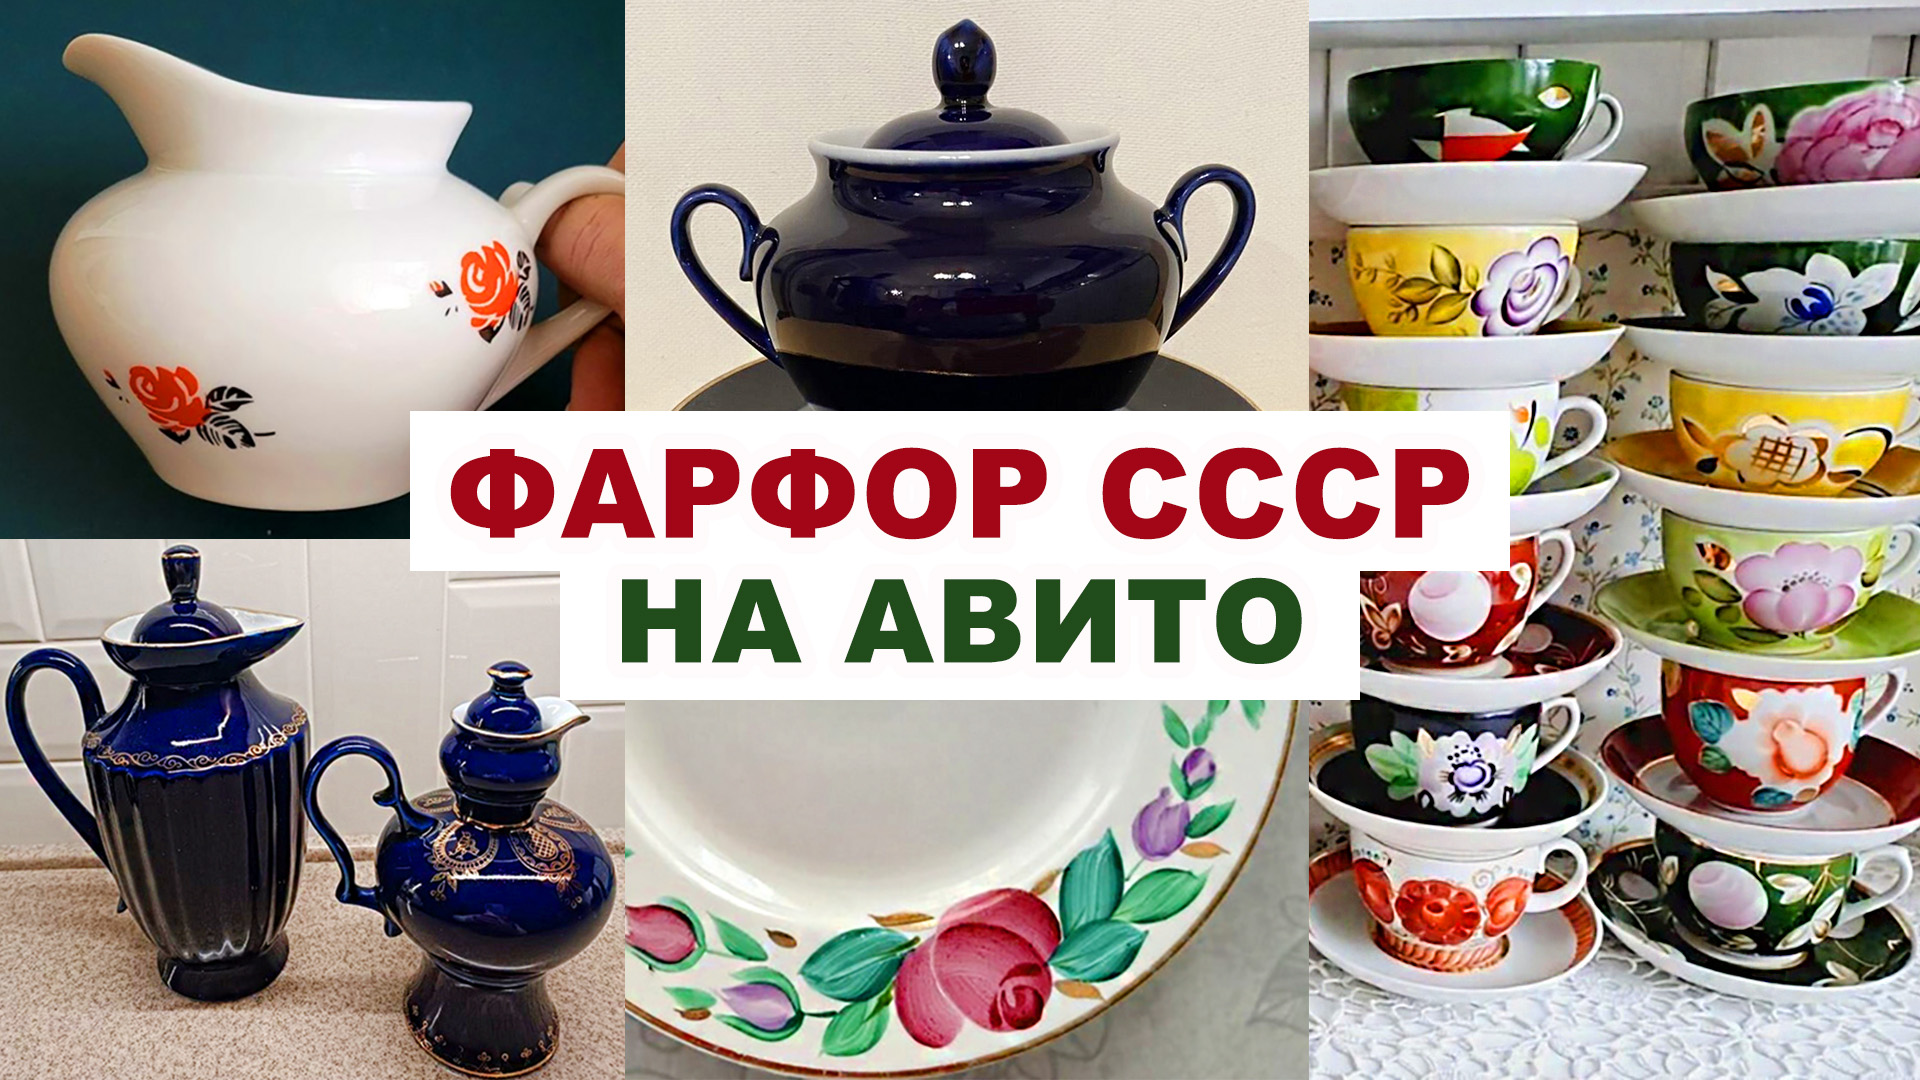 СМОТРИ ЧТО НАШЛА НА АВИТО =Посуда СССР= Цены фото ссылки. Советский фарфор. Шикарная посуда.